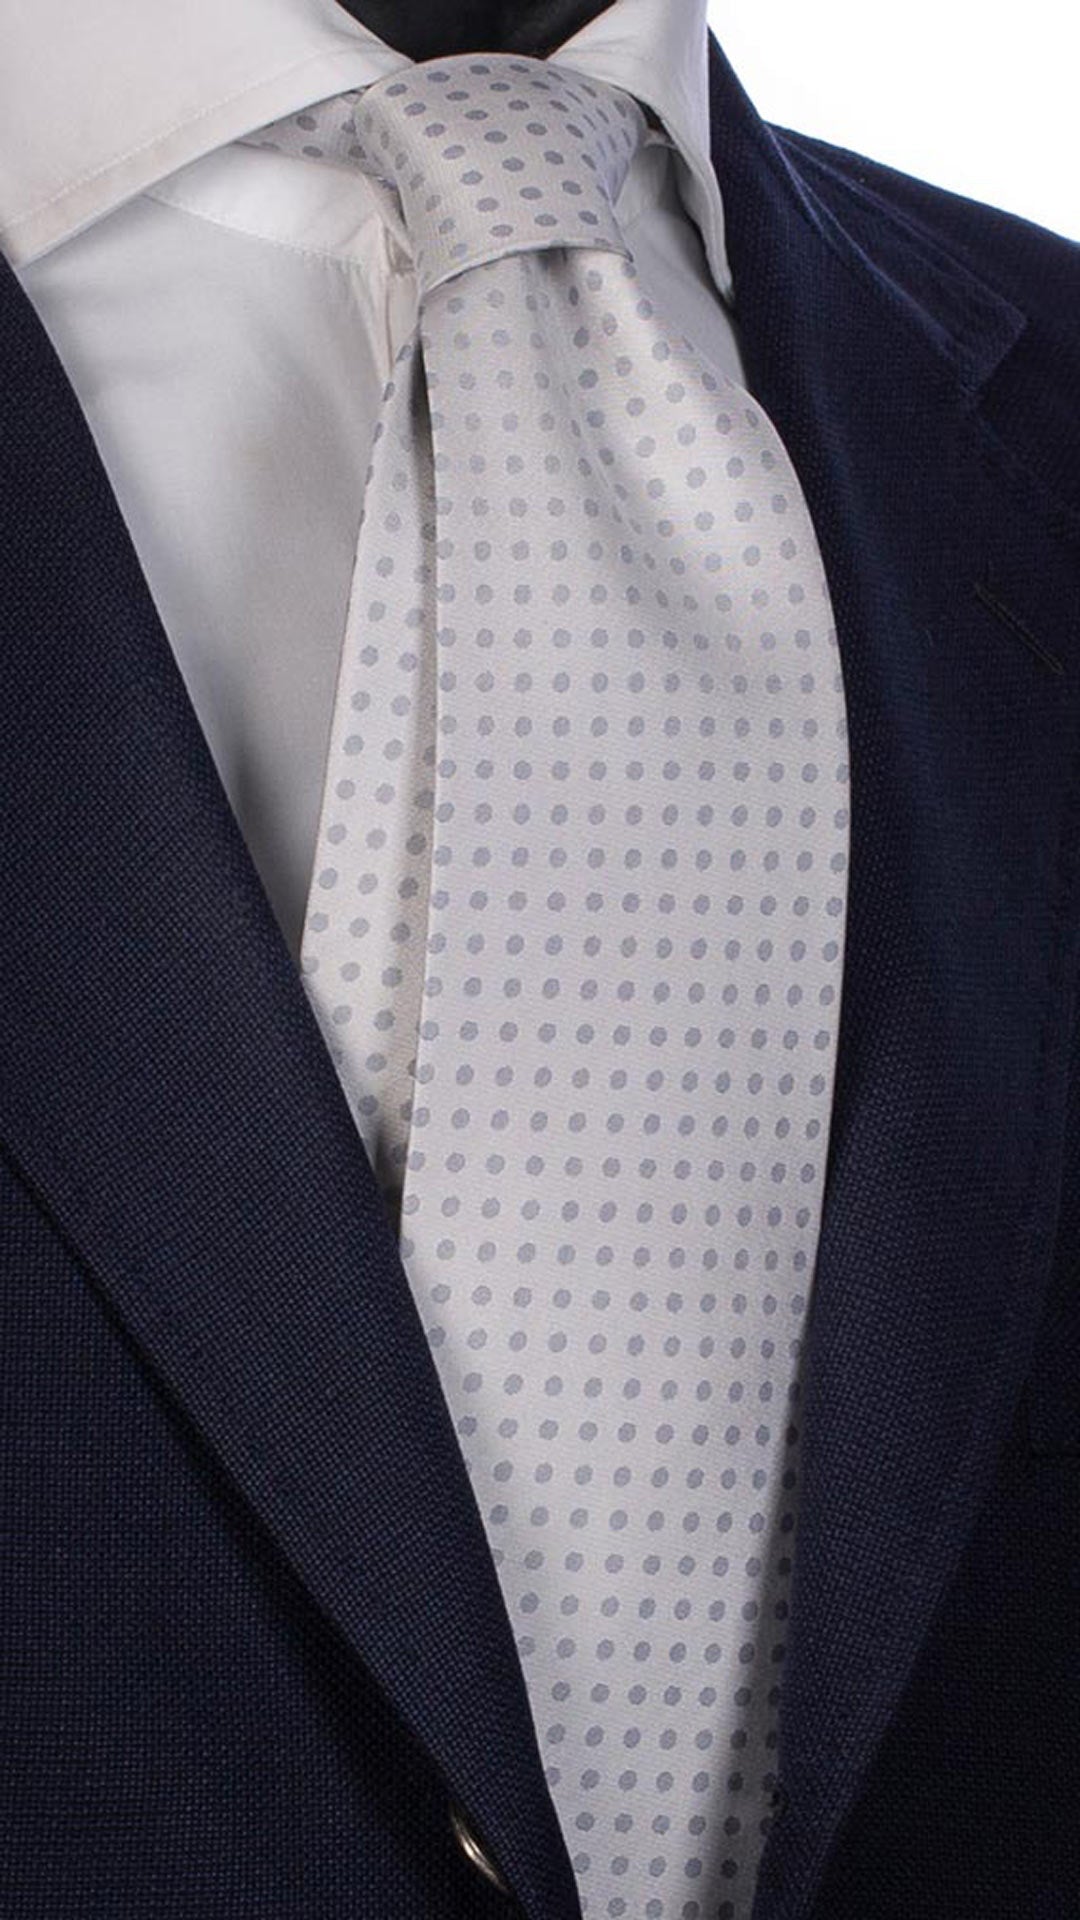 Cravatta da Cerimonia di Seta Grigio Chiaro Pois Grigio Scuro CY2564 Made in Italy Graffeo Cravatte